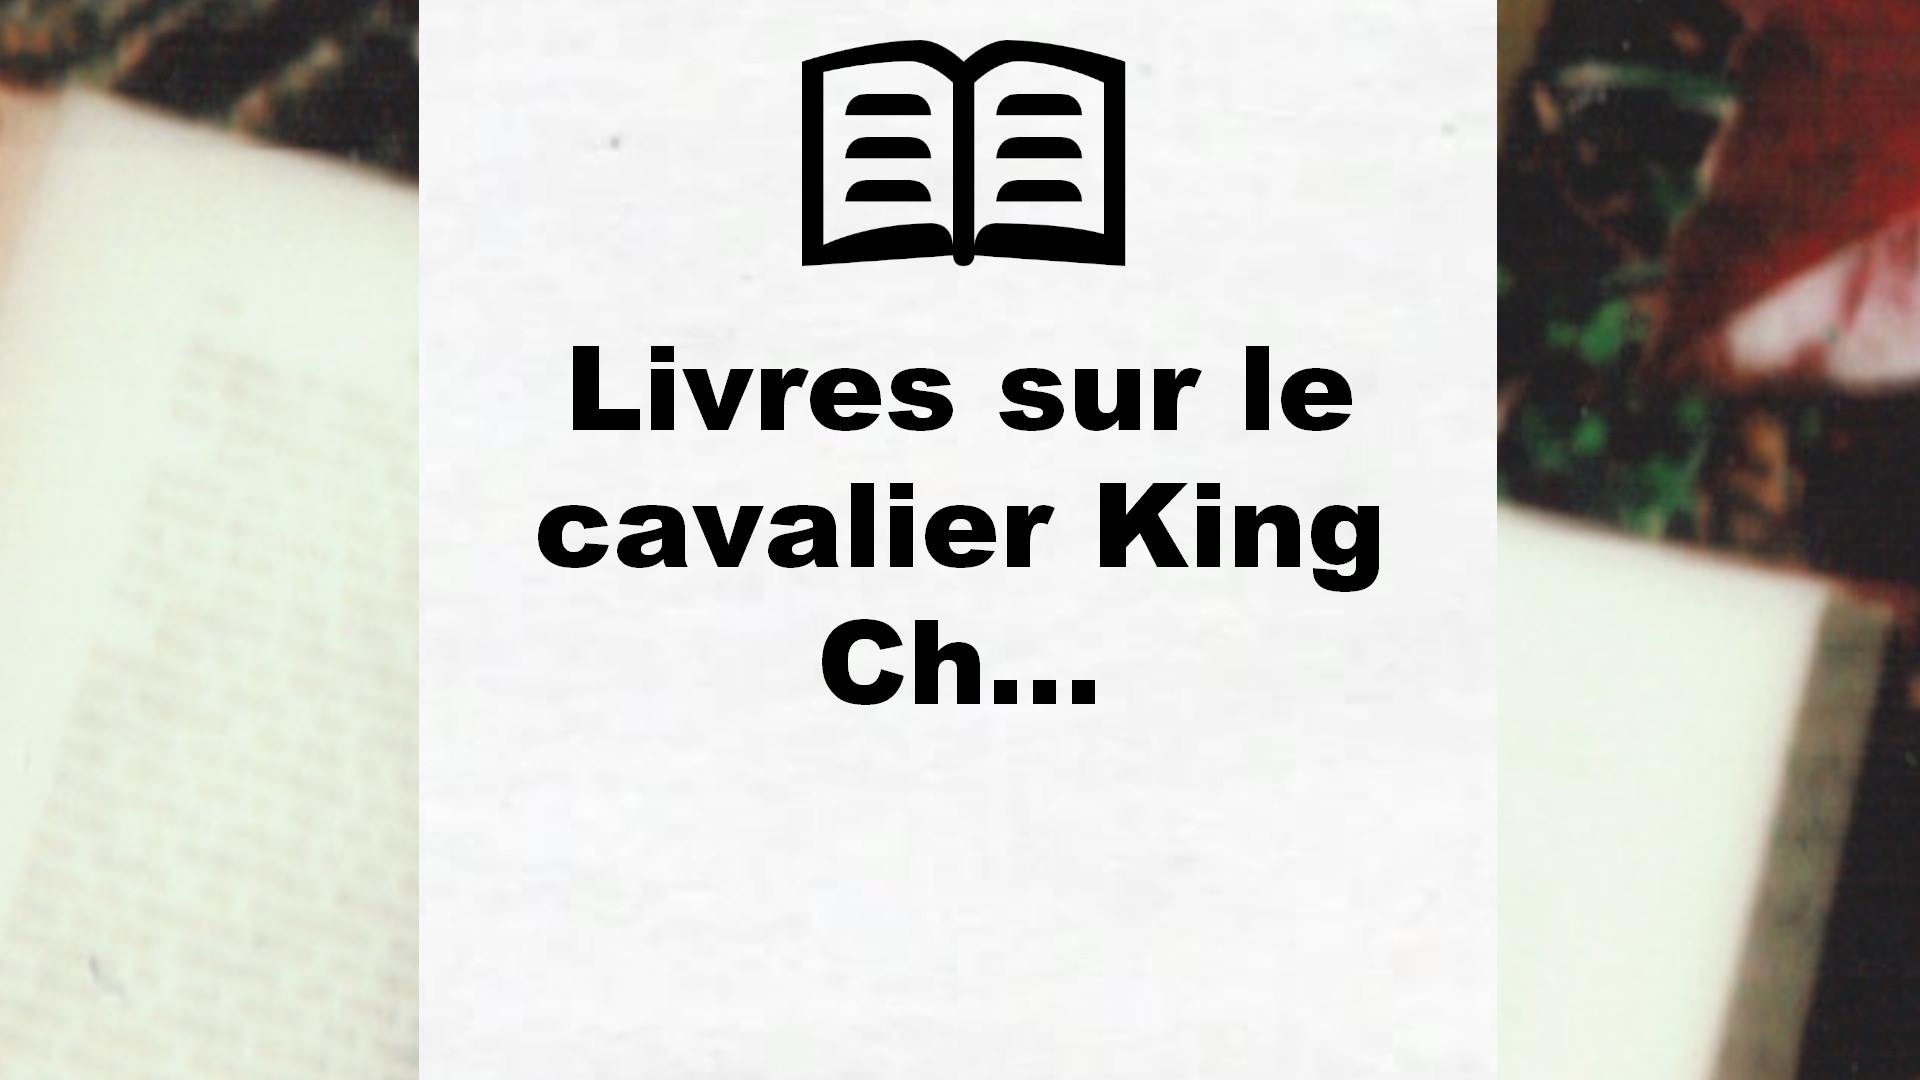 Livres sur le cavalier King Charles